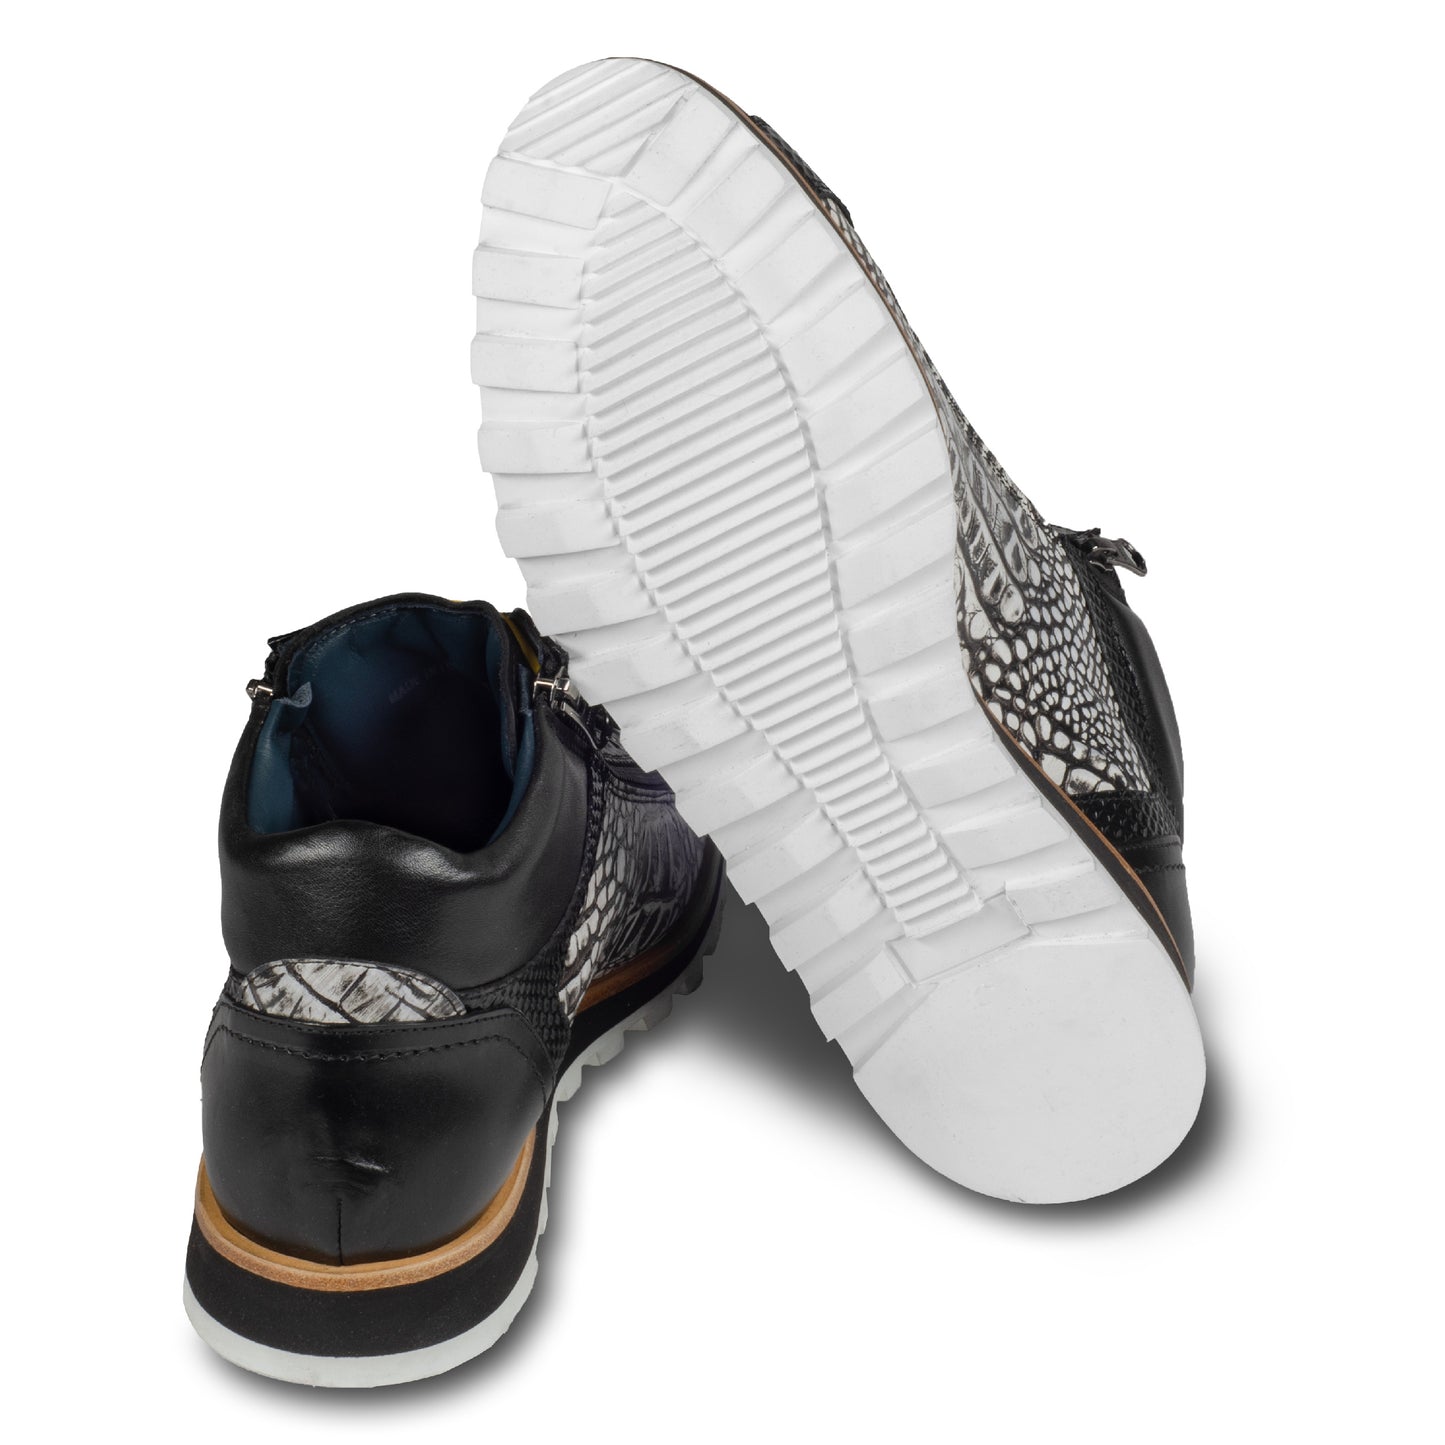 LORENZI - Italienische Herren Kalbsleder Sneaker Stiefel, in schwarz / weiß mit Reptil Prägung und seitlichem Reißverschluß. Handgefertigt und durchgenäht. Ansicht der Ferse und Sohlenunterseite.